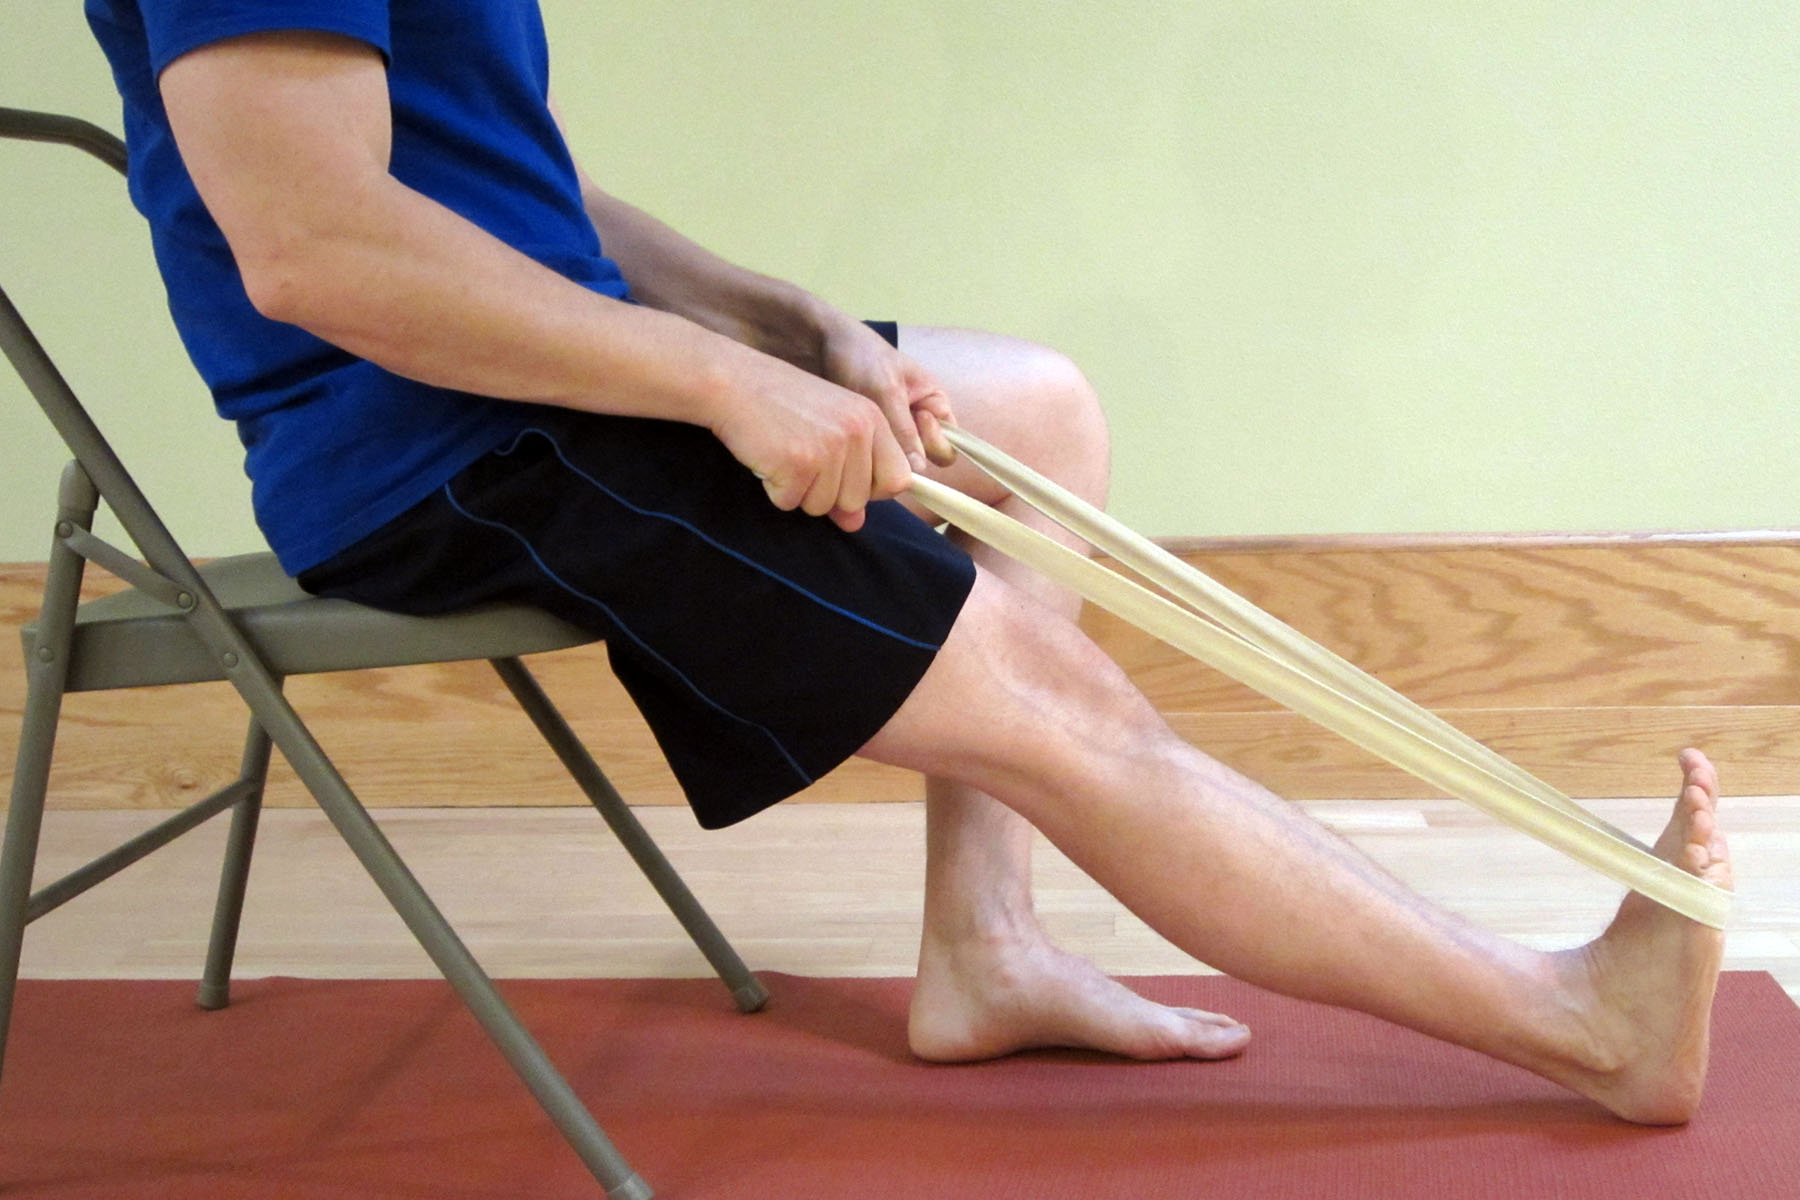 Судороги ног помощь в домашних условиях. Занятия при парезе стопы. Лечебная физкультура после инсульта. Лечебная физкультура для ног. Лечебная физкультура при парезе стопы.